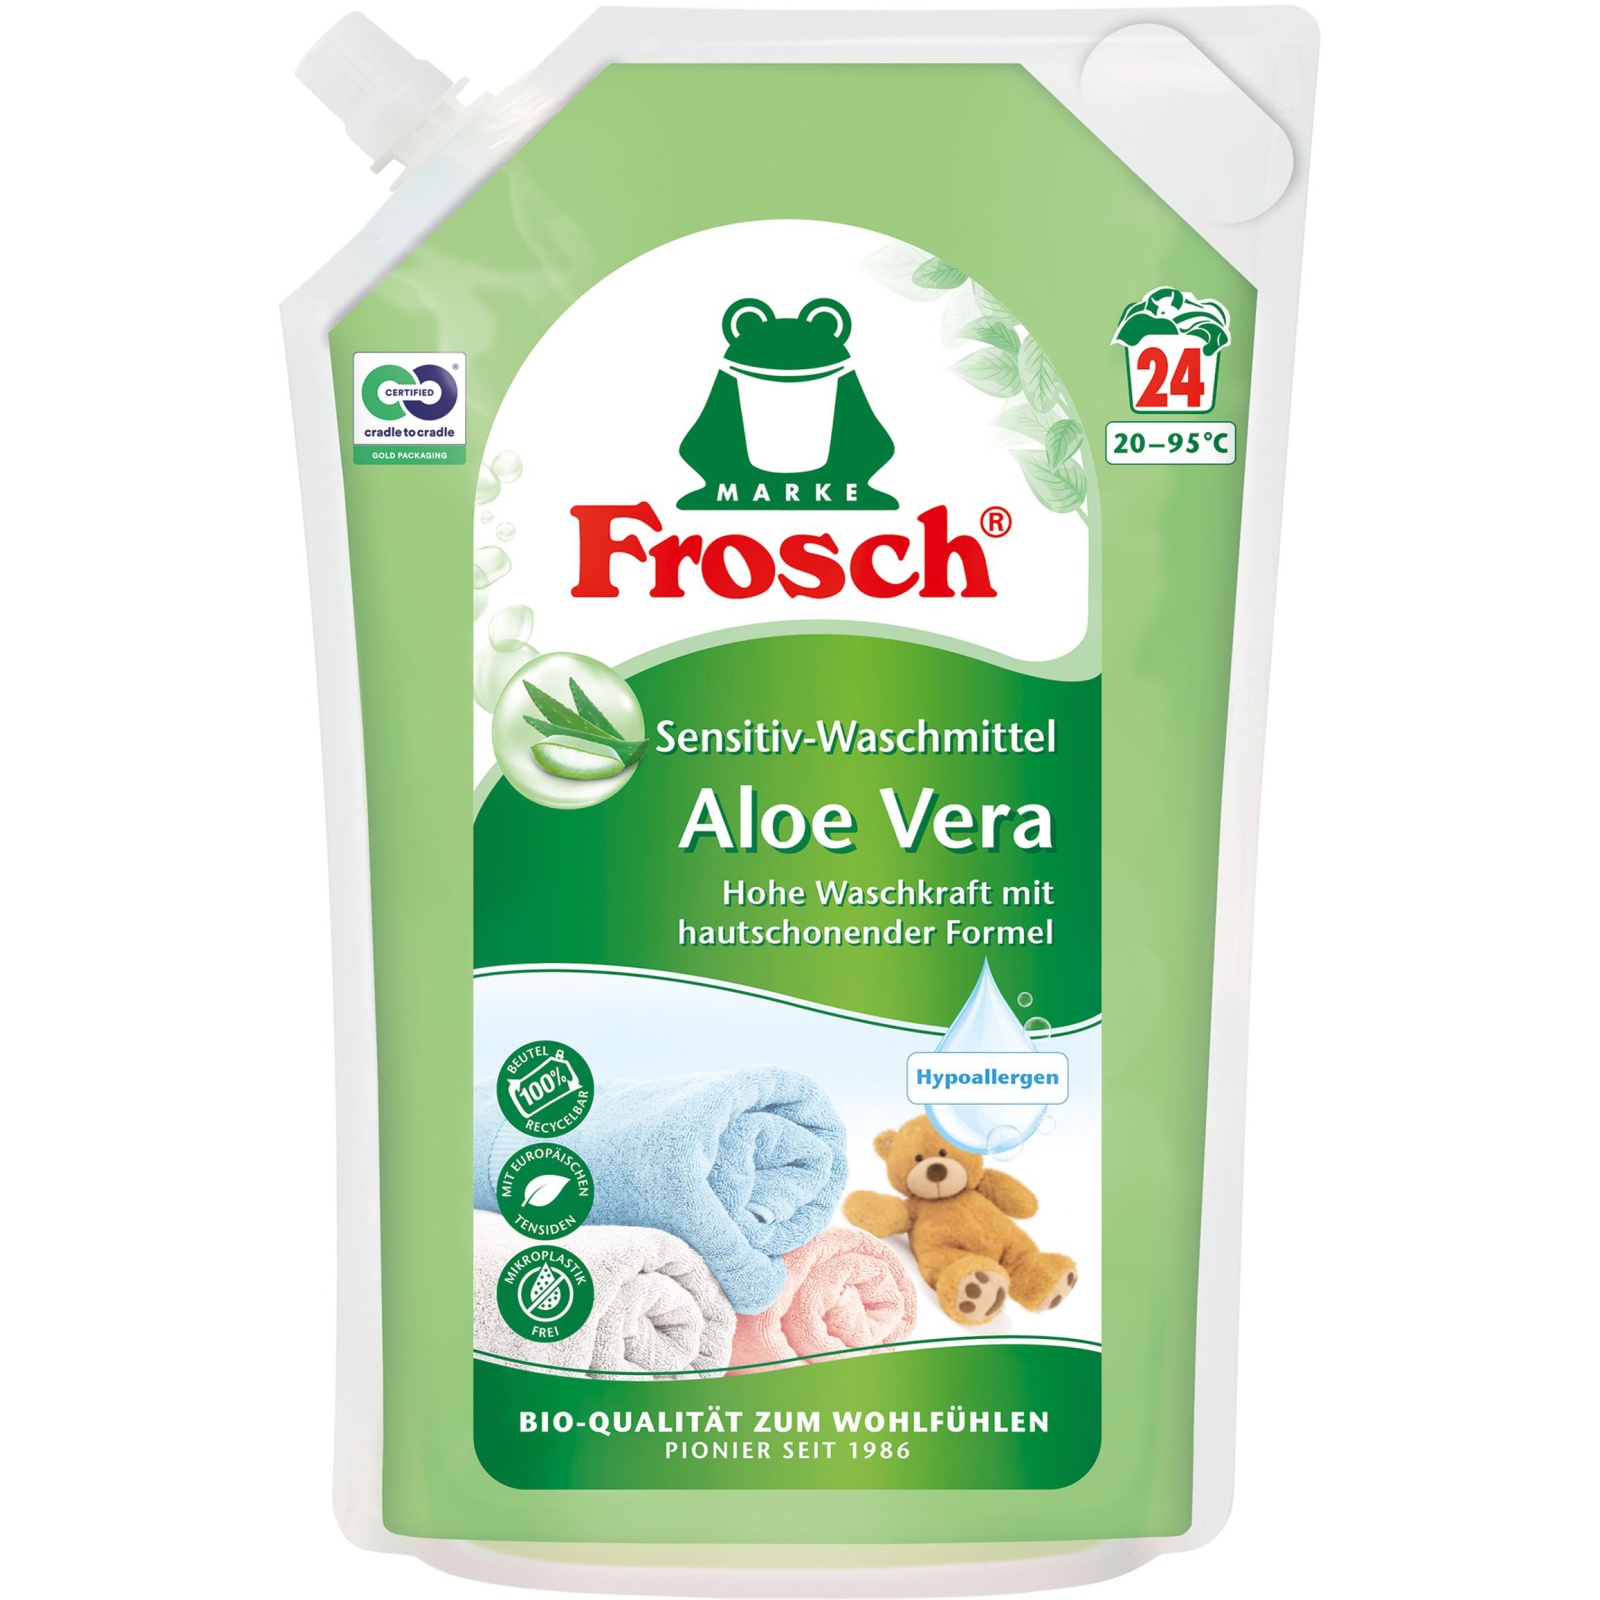 Гель для стирки Frosch Aloe Vera Sensitiv 1.8 л (4001499960239)